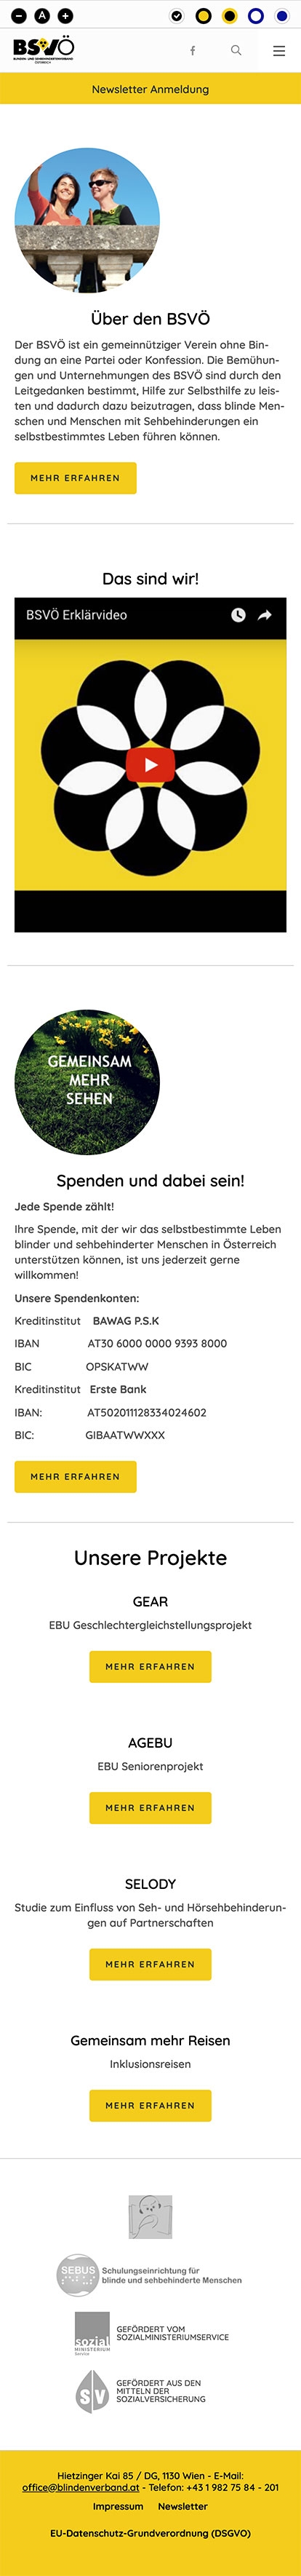 Blinden- und Sehbehindertenverband Österreich | blindenverband.at | 2018 (Mobile Full) © echonet communication